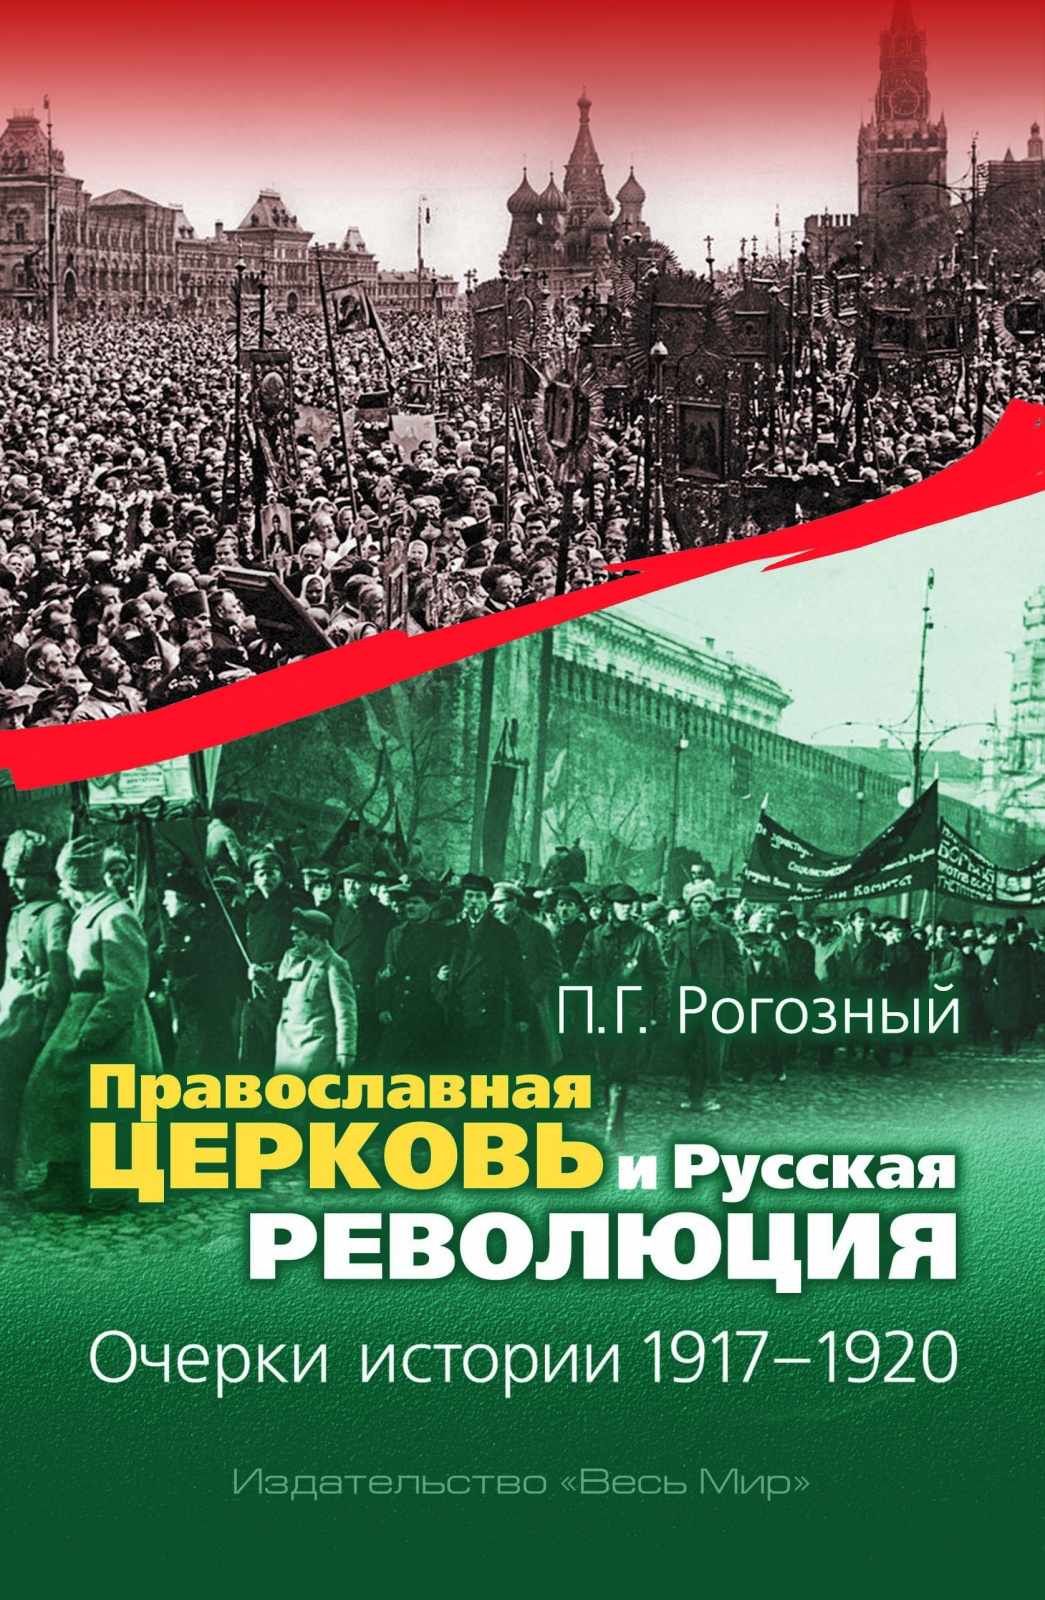 фото Книга православная церковь и русская революция, очерки истории, 1917–1920 весь мир